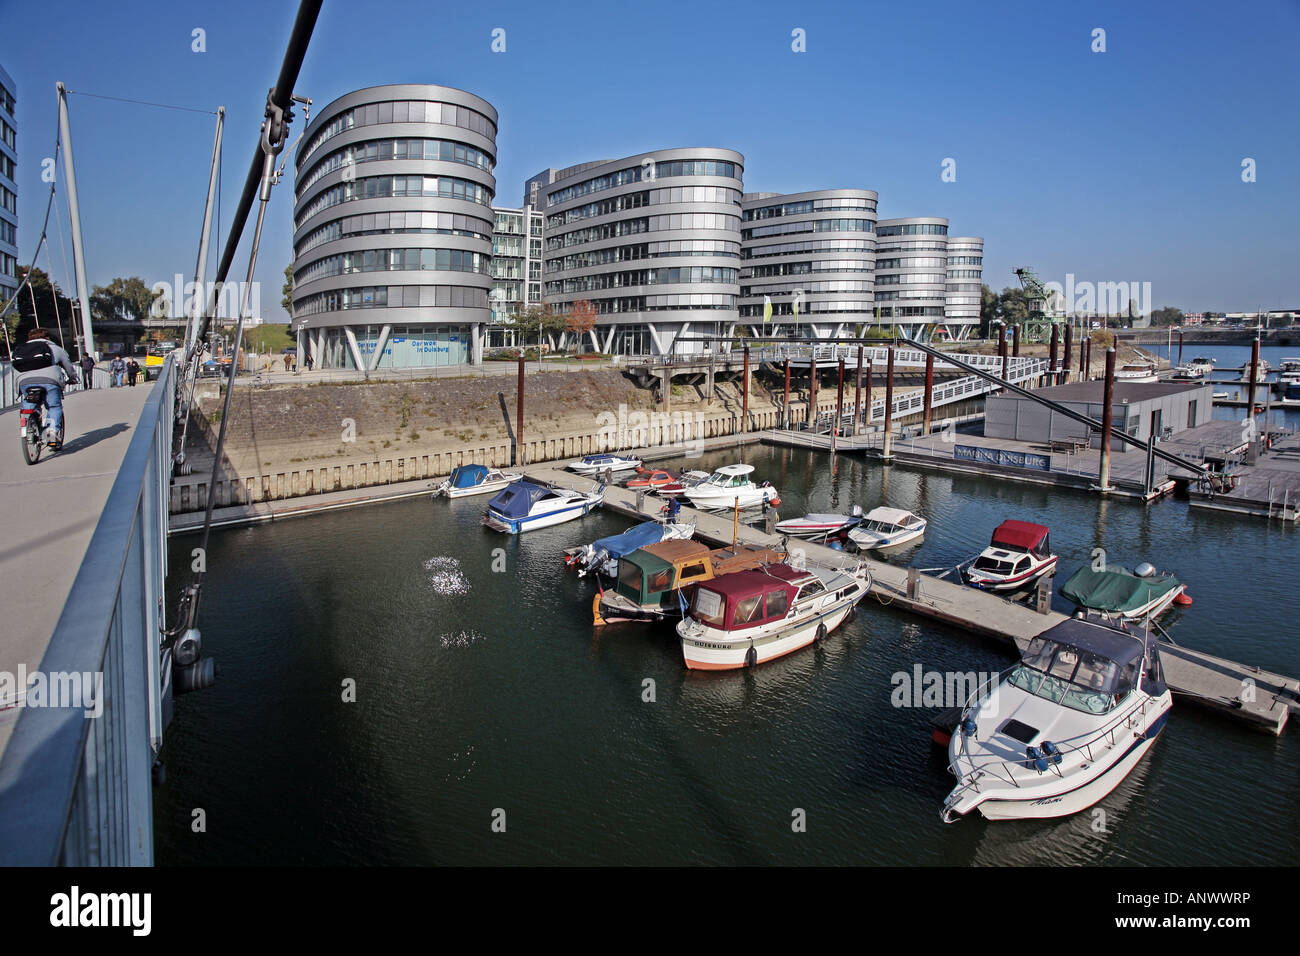 Ponte pedonale con la marina e le cinque barche nel porto interno, in Germania, in Renania settentrionale-Vestfalia, la zona della Ruhr, Duisburg Foto Stock